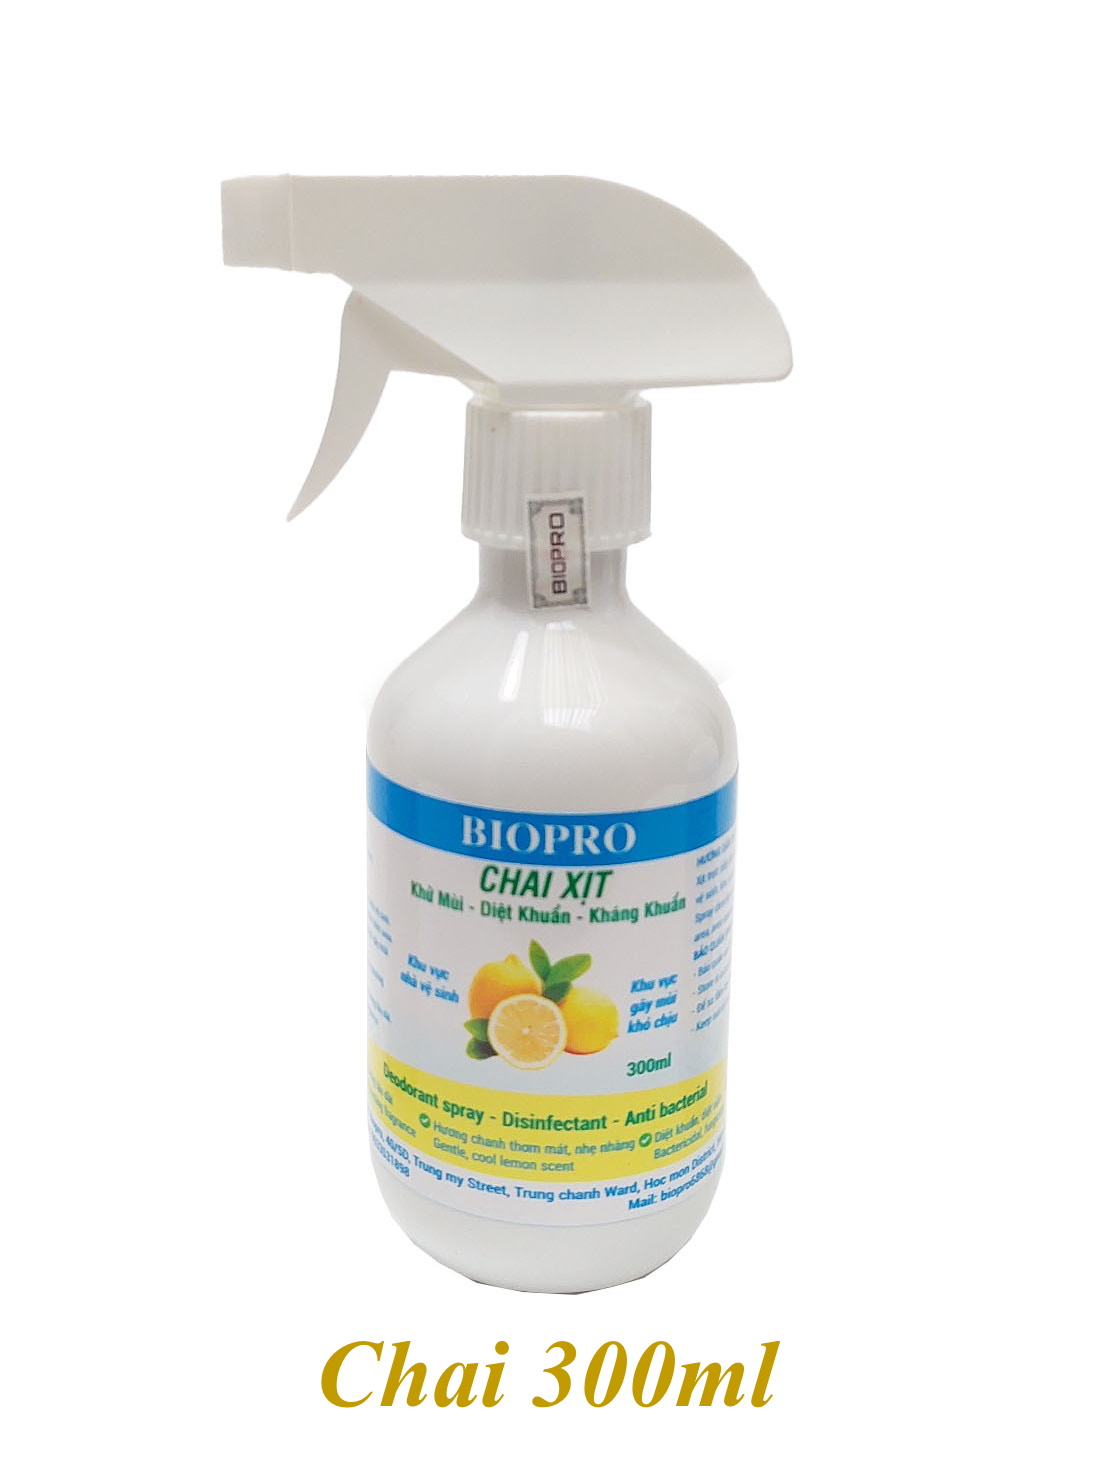 Chai xịt Biopro khử mùi diệt khuẩn kháng khuẩn Khu vực gây mùi khó chịu Khu vực nhà vệ sinh Hương chanh thơm mát dịu nhẹ